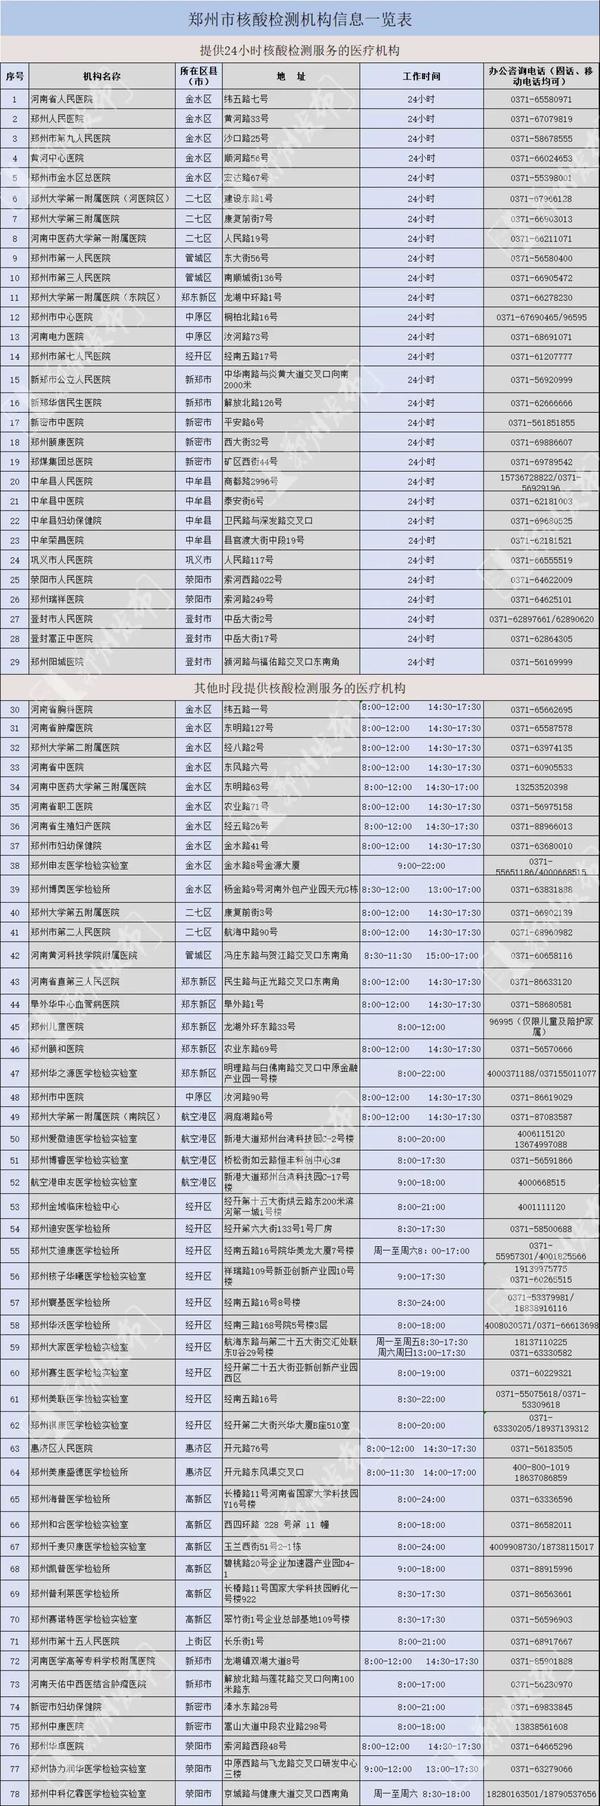 郑州共有78家核酸检测机构 24小时核酸检测点发布